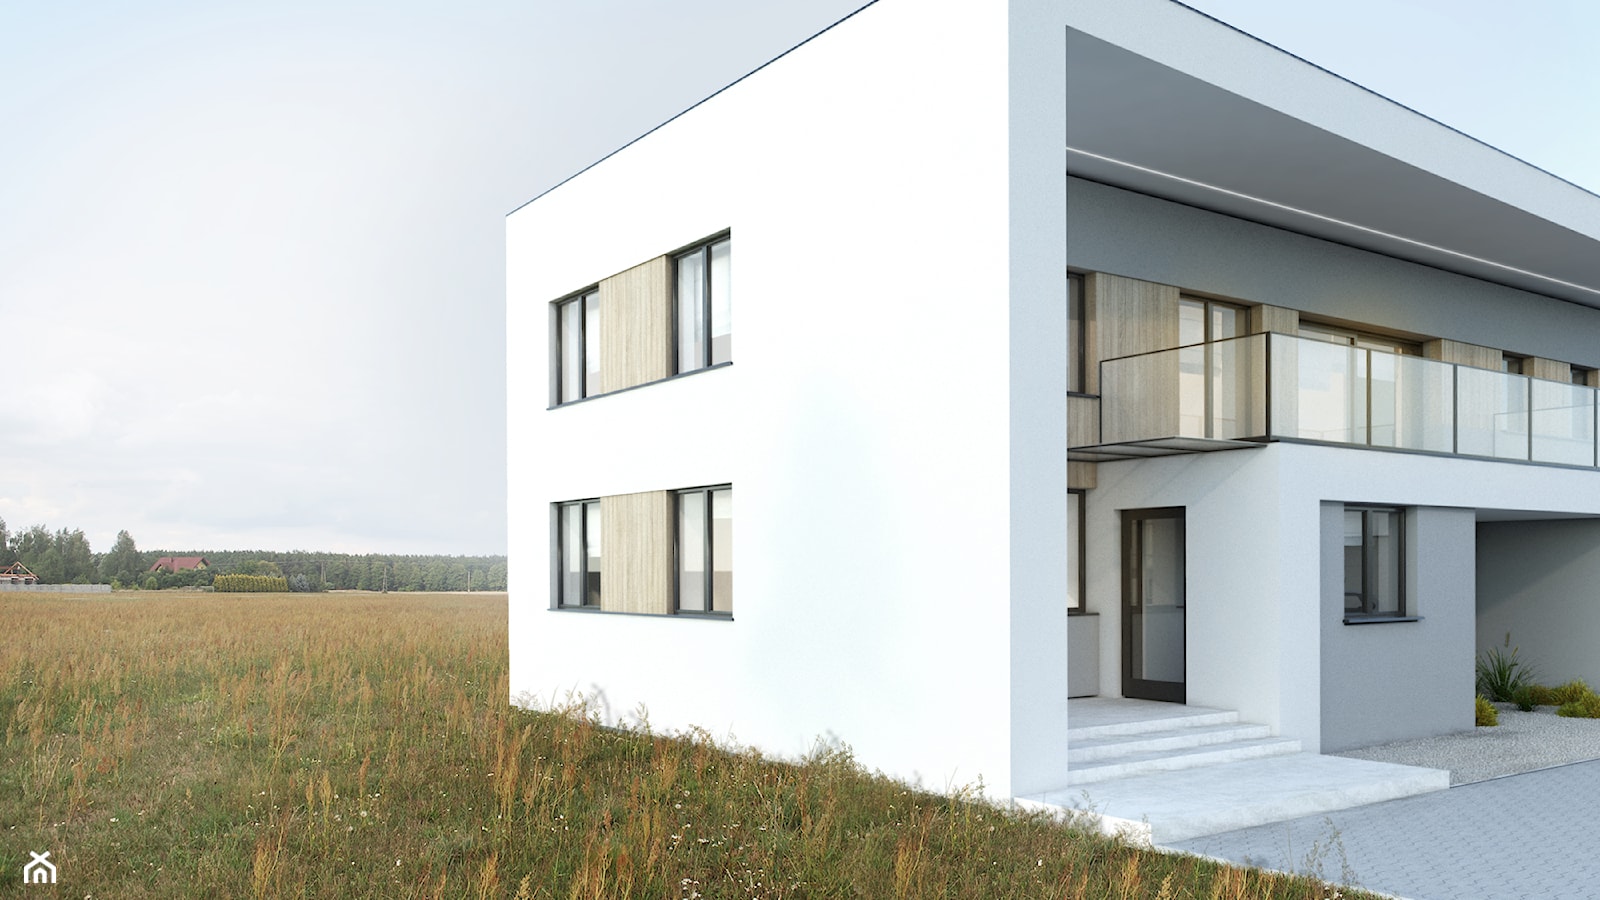 Dom typu kostka - zdjęcie od BIAMS Budownictwo i Architektura Marcin Sieradzki - projektant, architekt - Homebook